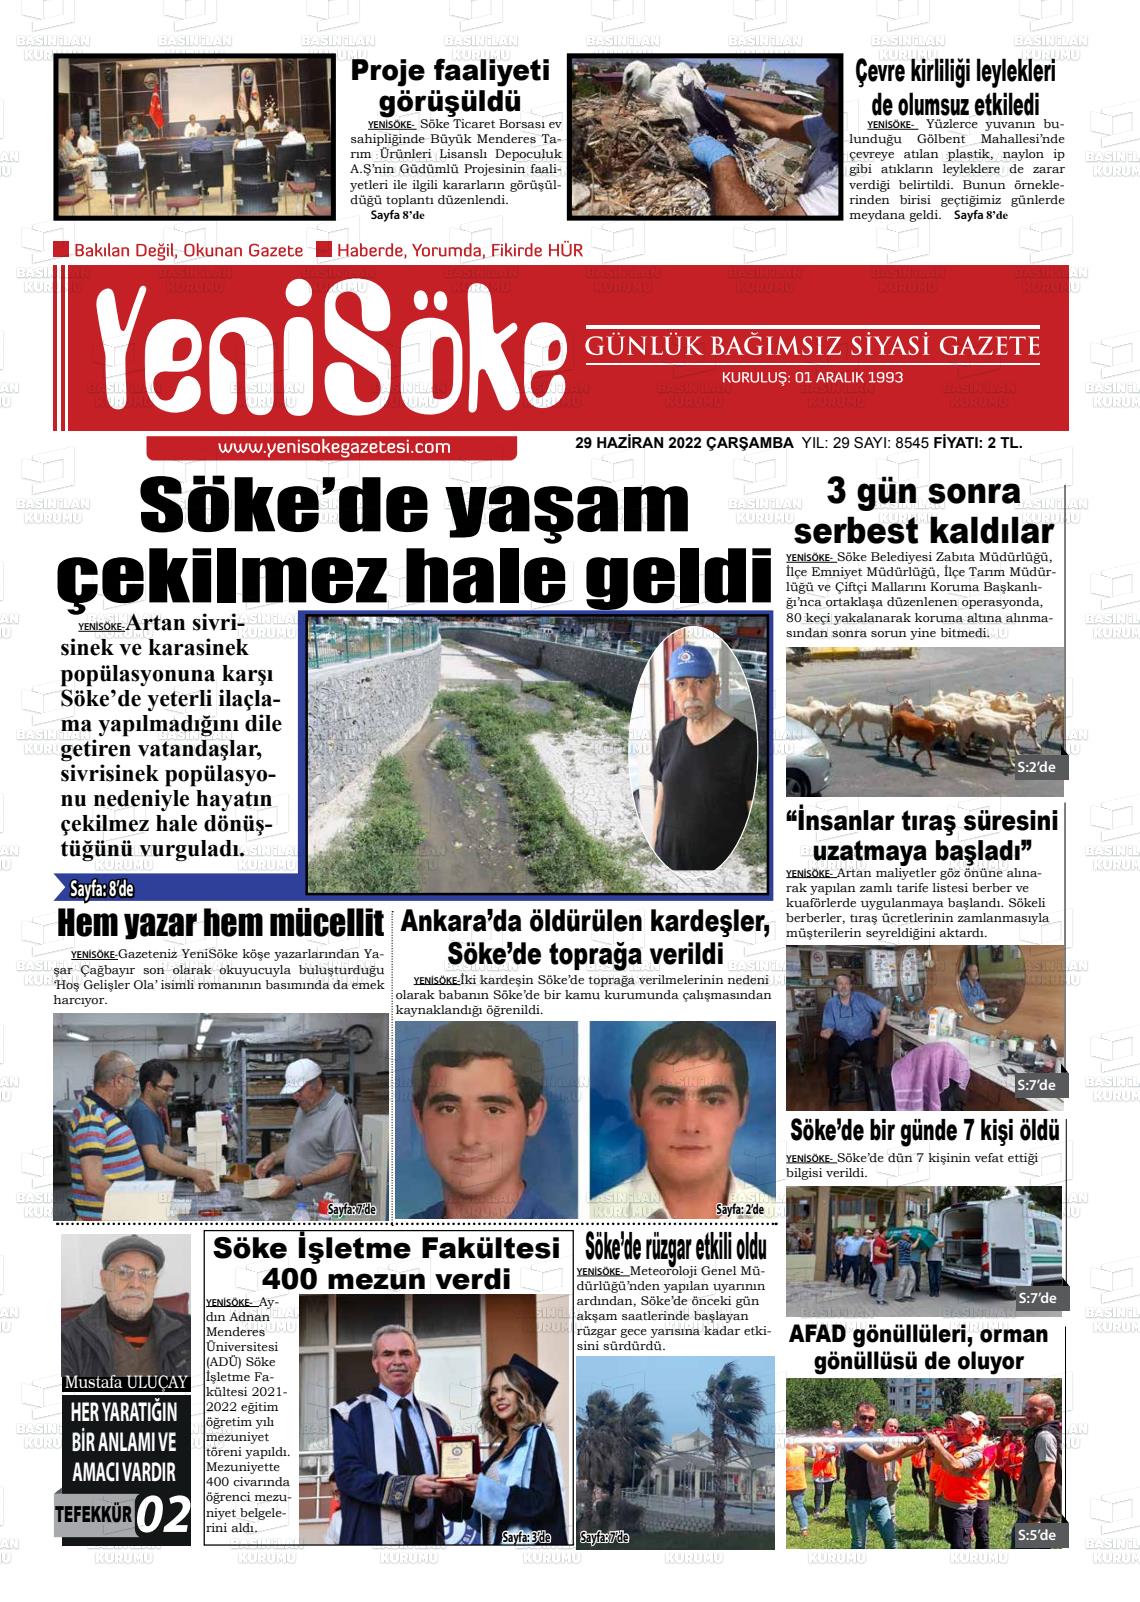 29 Haziran 2022 Yeni Söke Gazete Manşeti